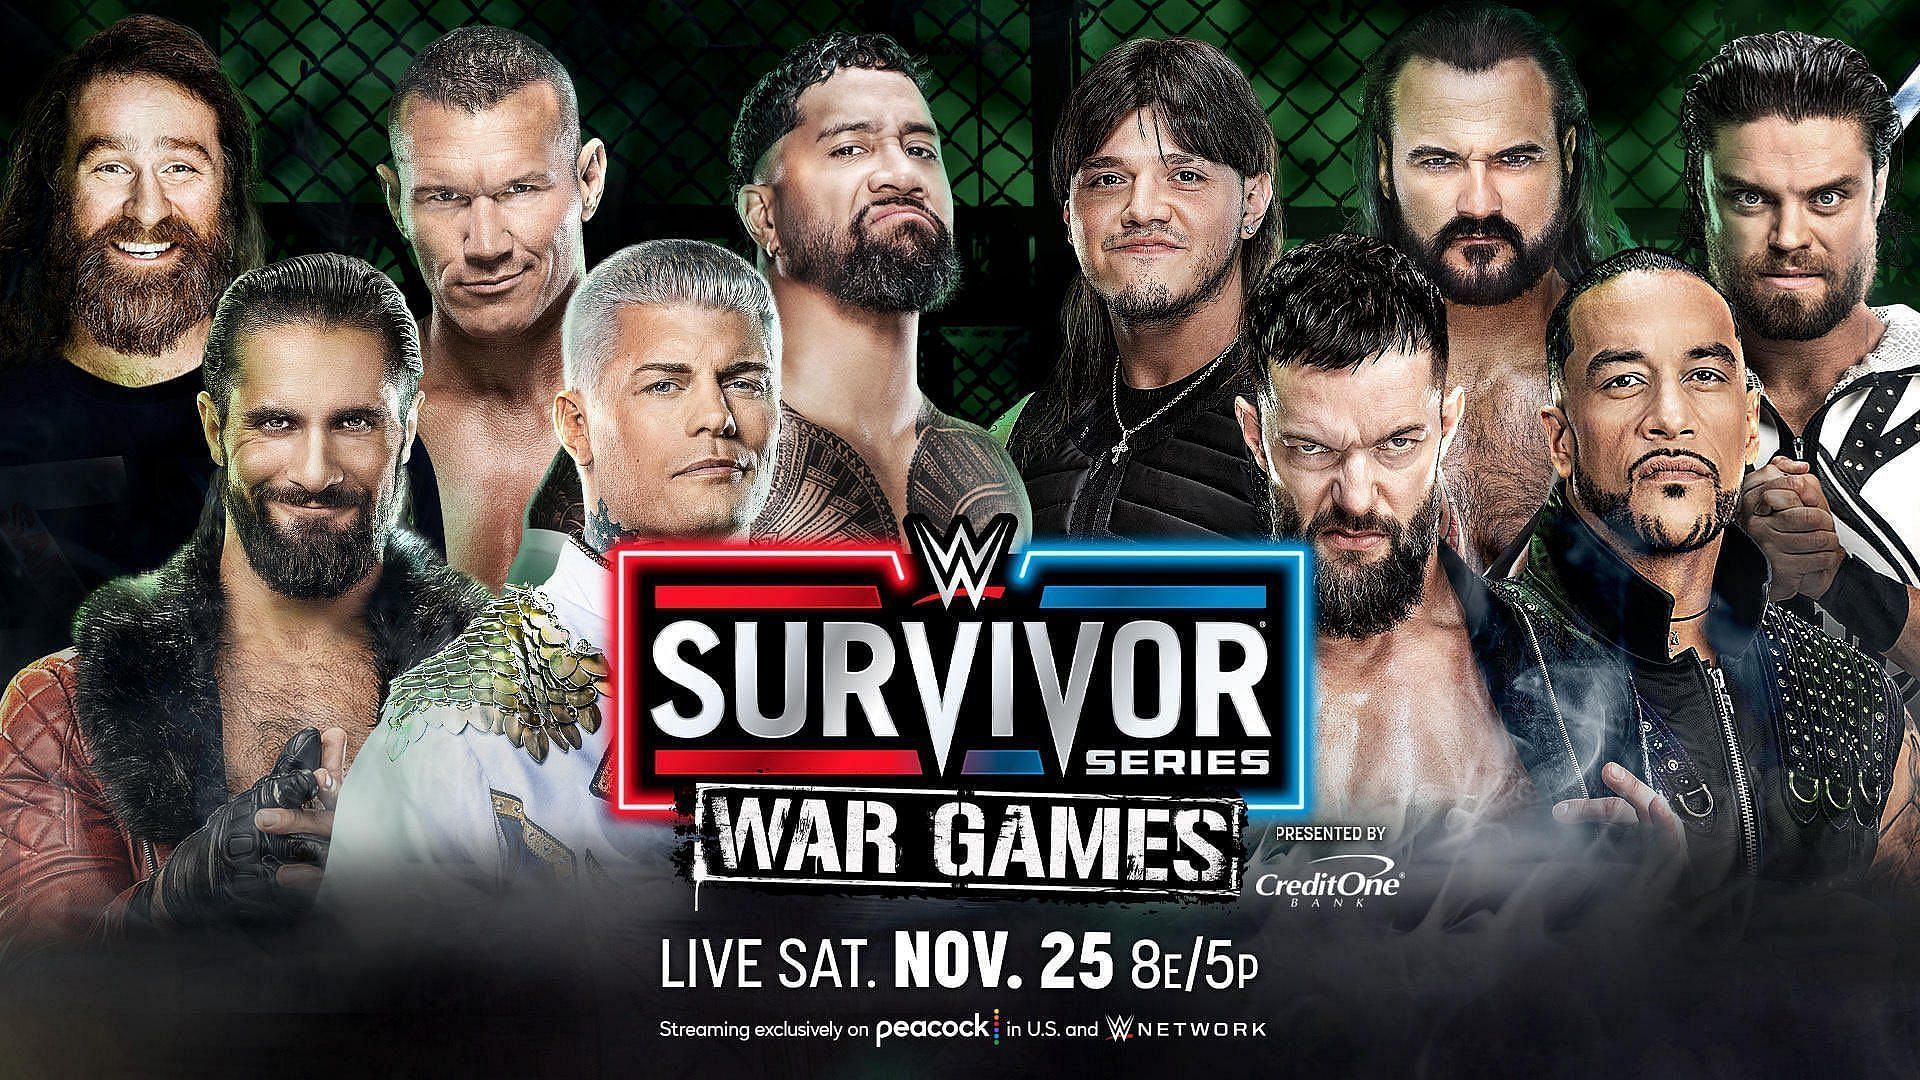 The WarGames match scheduled  for Survivor Series